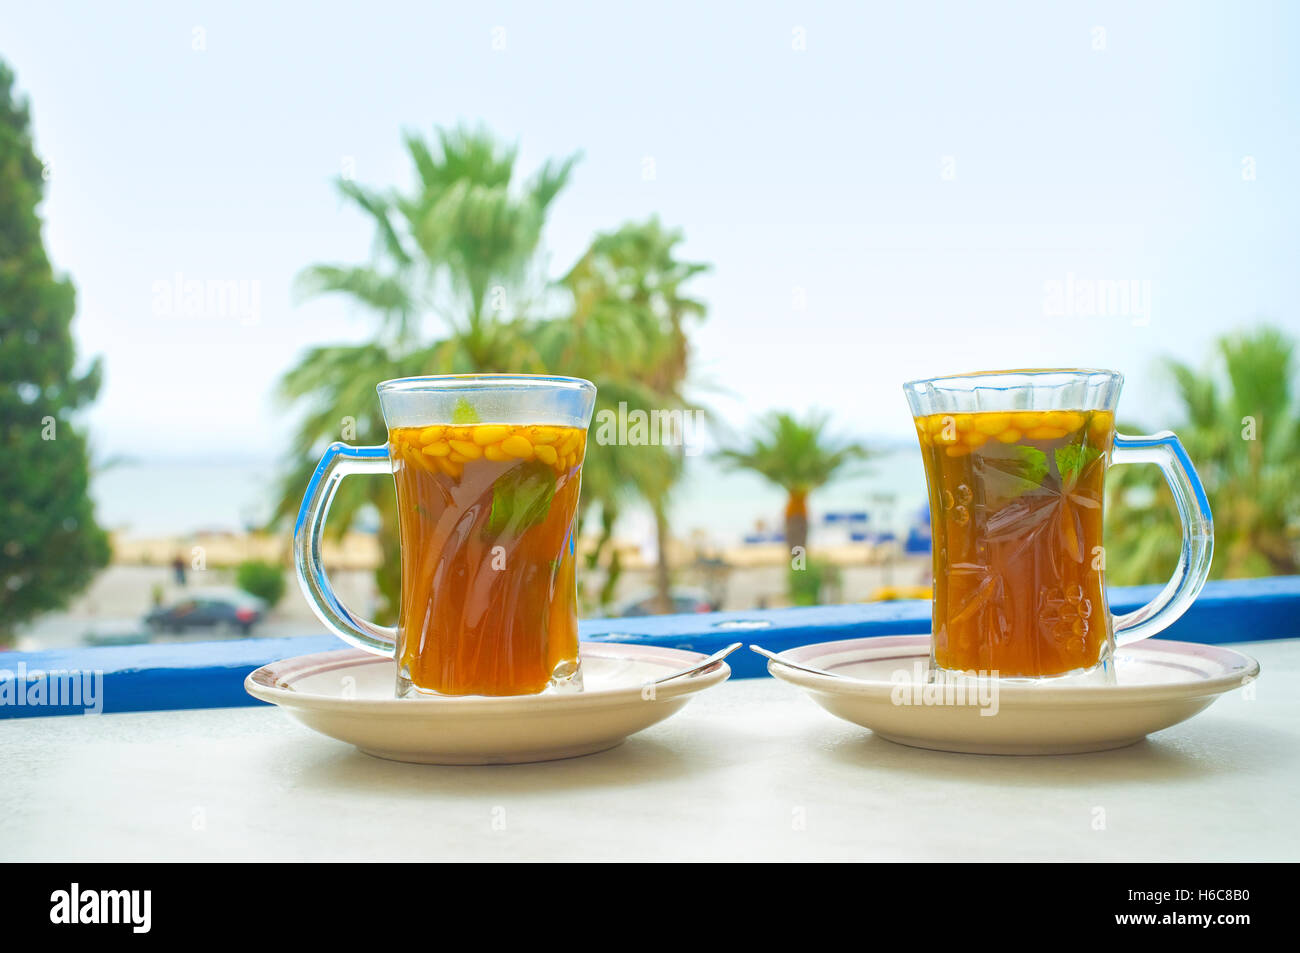 La rinfrescante tè arabo è la scelta migliore per rilassarsi e godersi la vacanza in Tunisia. Foto Stock